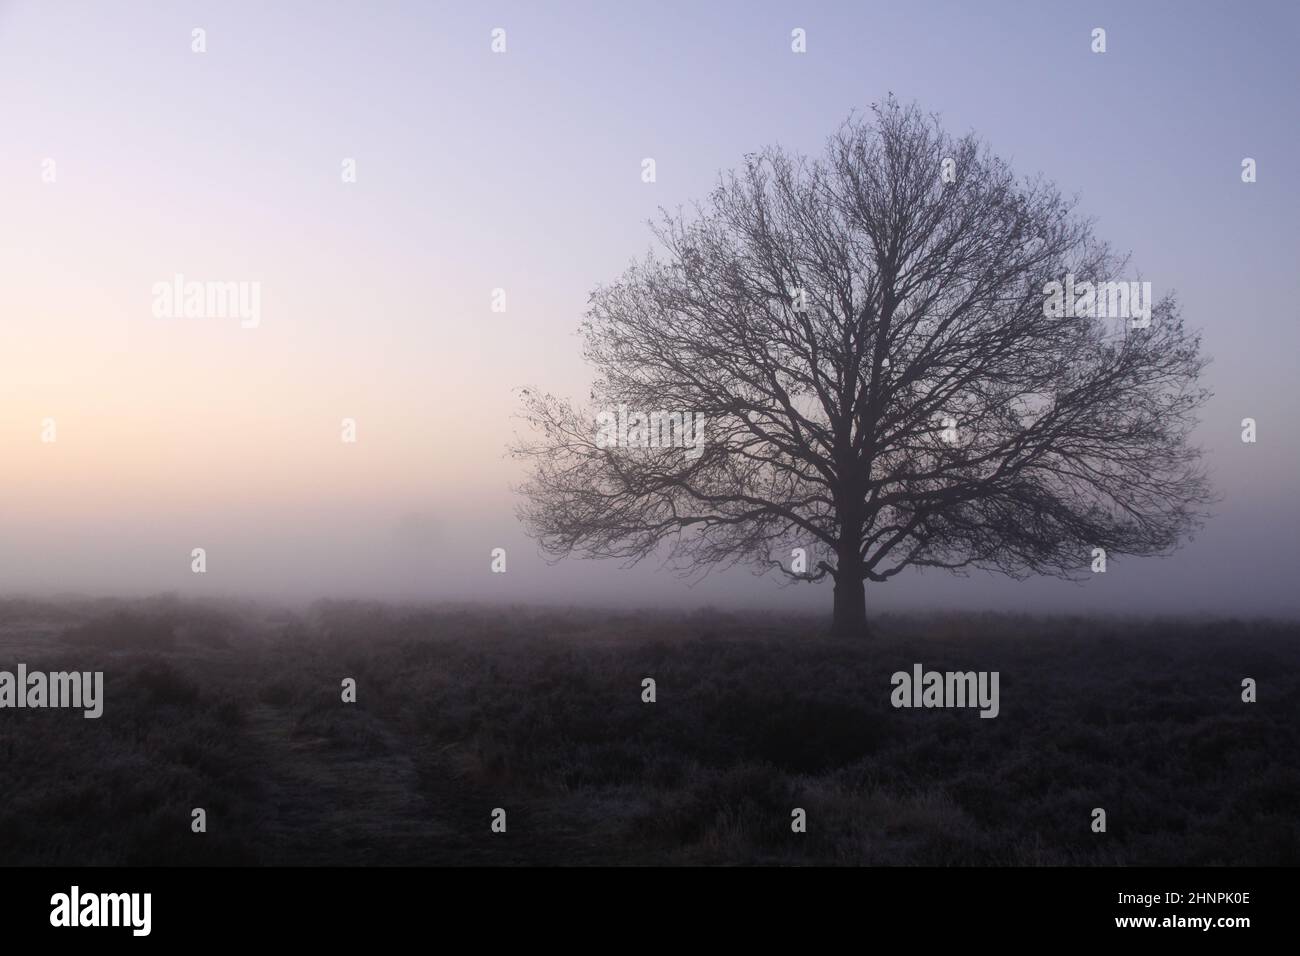 Ein einbunter Baum im dichten Nebel während des Sonnenaufgangs. Stockfoto